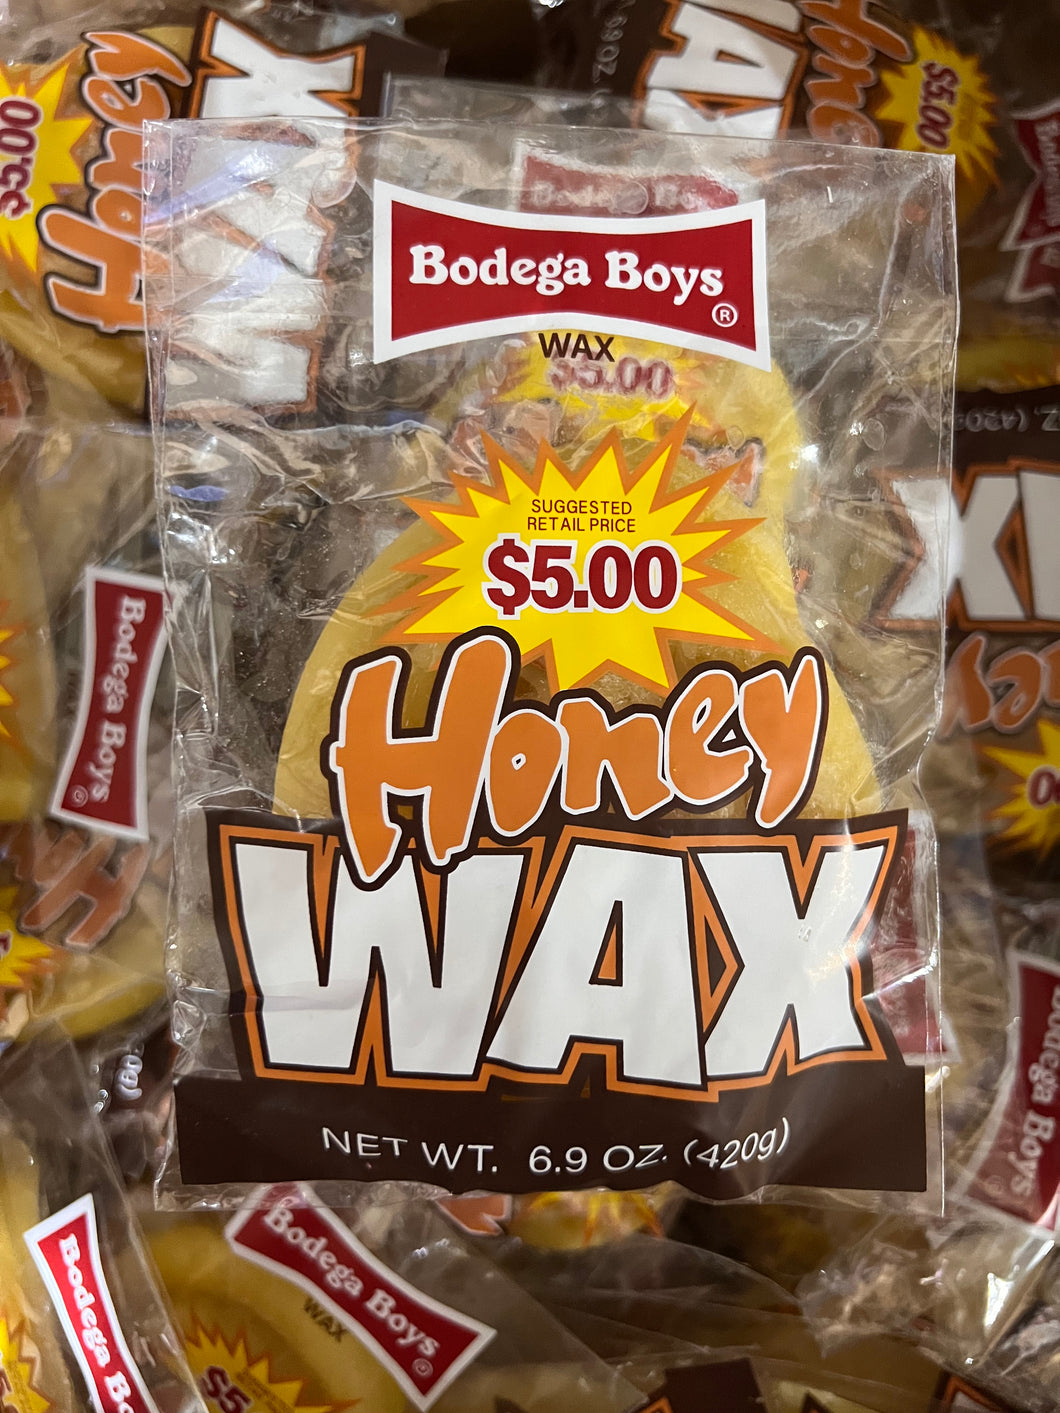 Bodega Boys Honey Bun Wax - DEAL PRICING